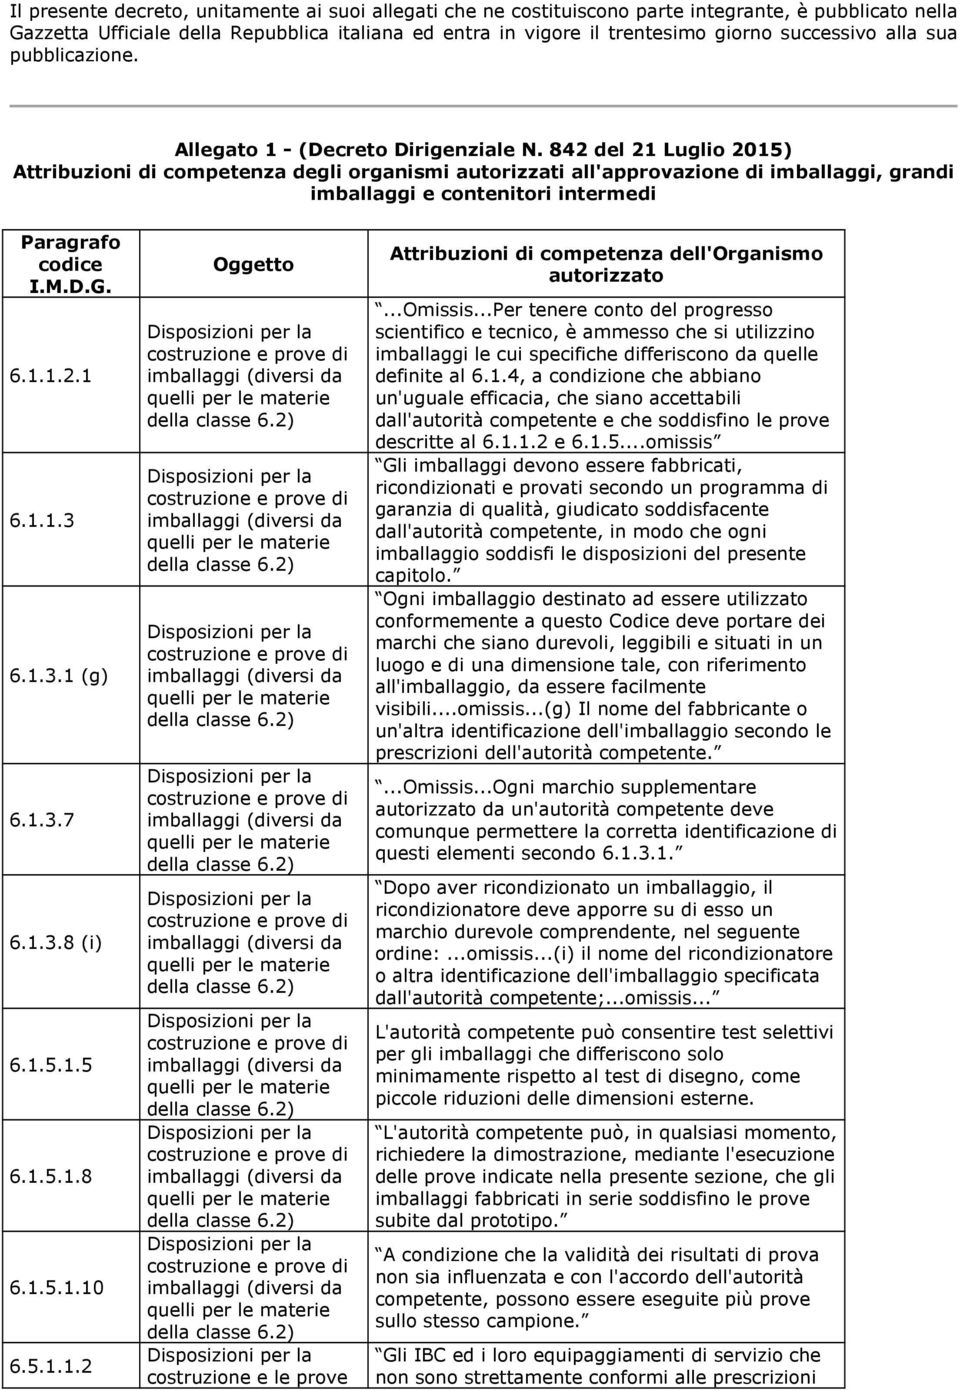 842 del 21 Luglio 2015) Attribuzioni di competenza degli organismi autorizzati all'approvazione di imballaggi, grandi imballaggi e contenitori Paragrafo codice I.M.D.G. 6.1.1.2.1 6.1.1.3 6.1.3.1 (g) 6.